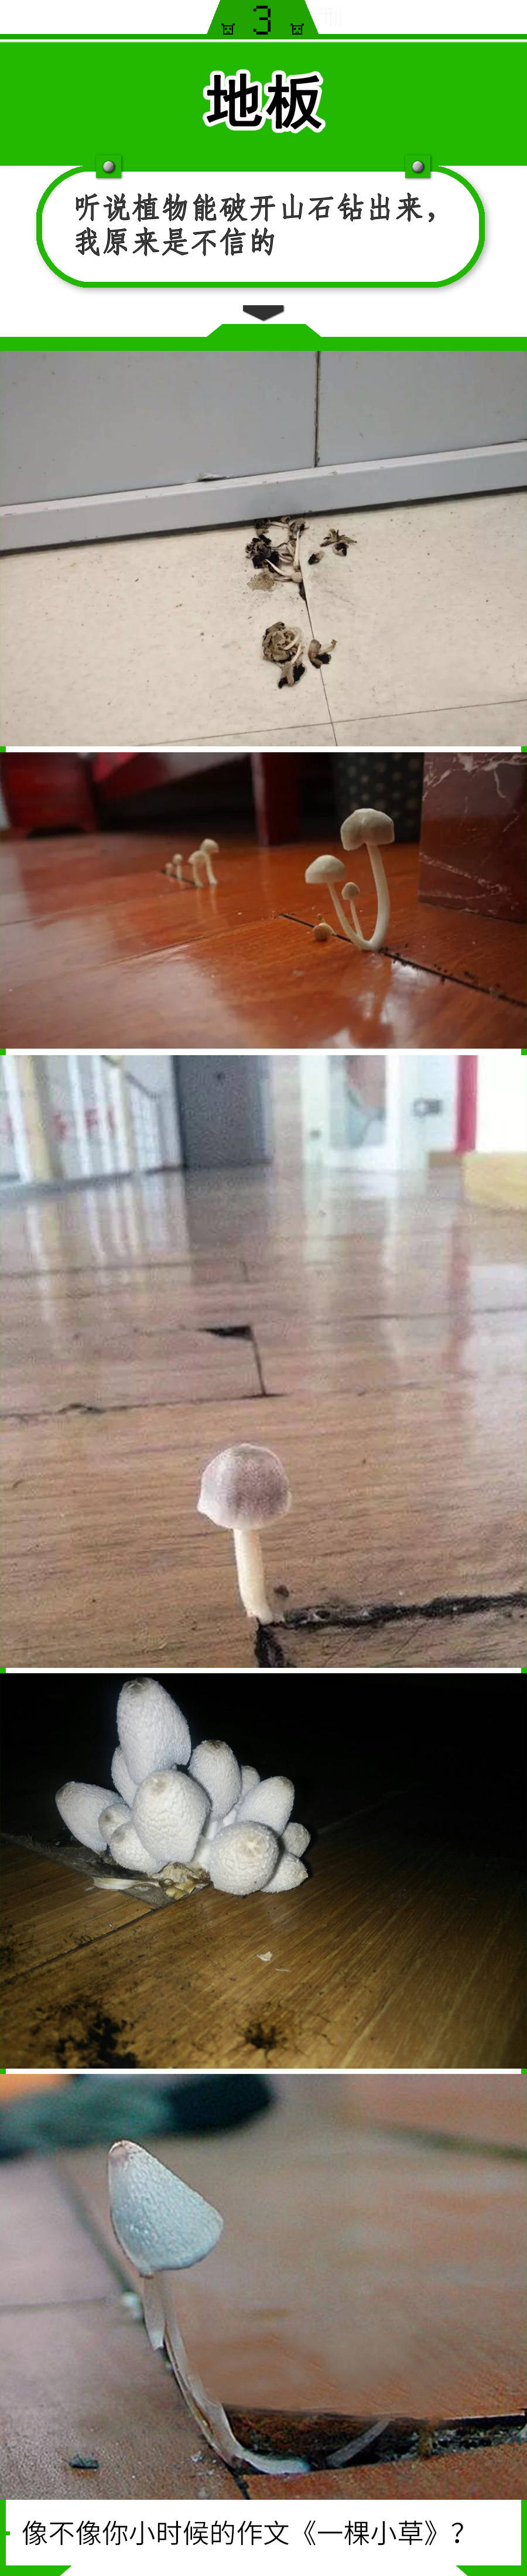 真的长蘑菇了!